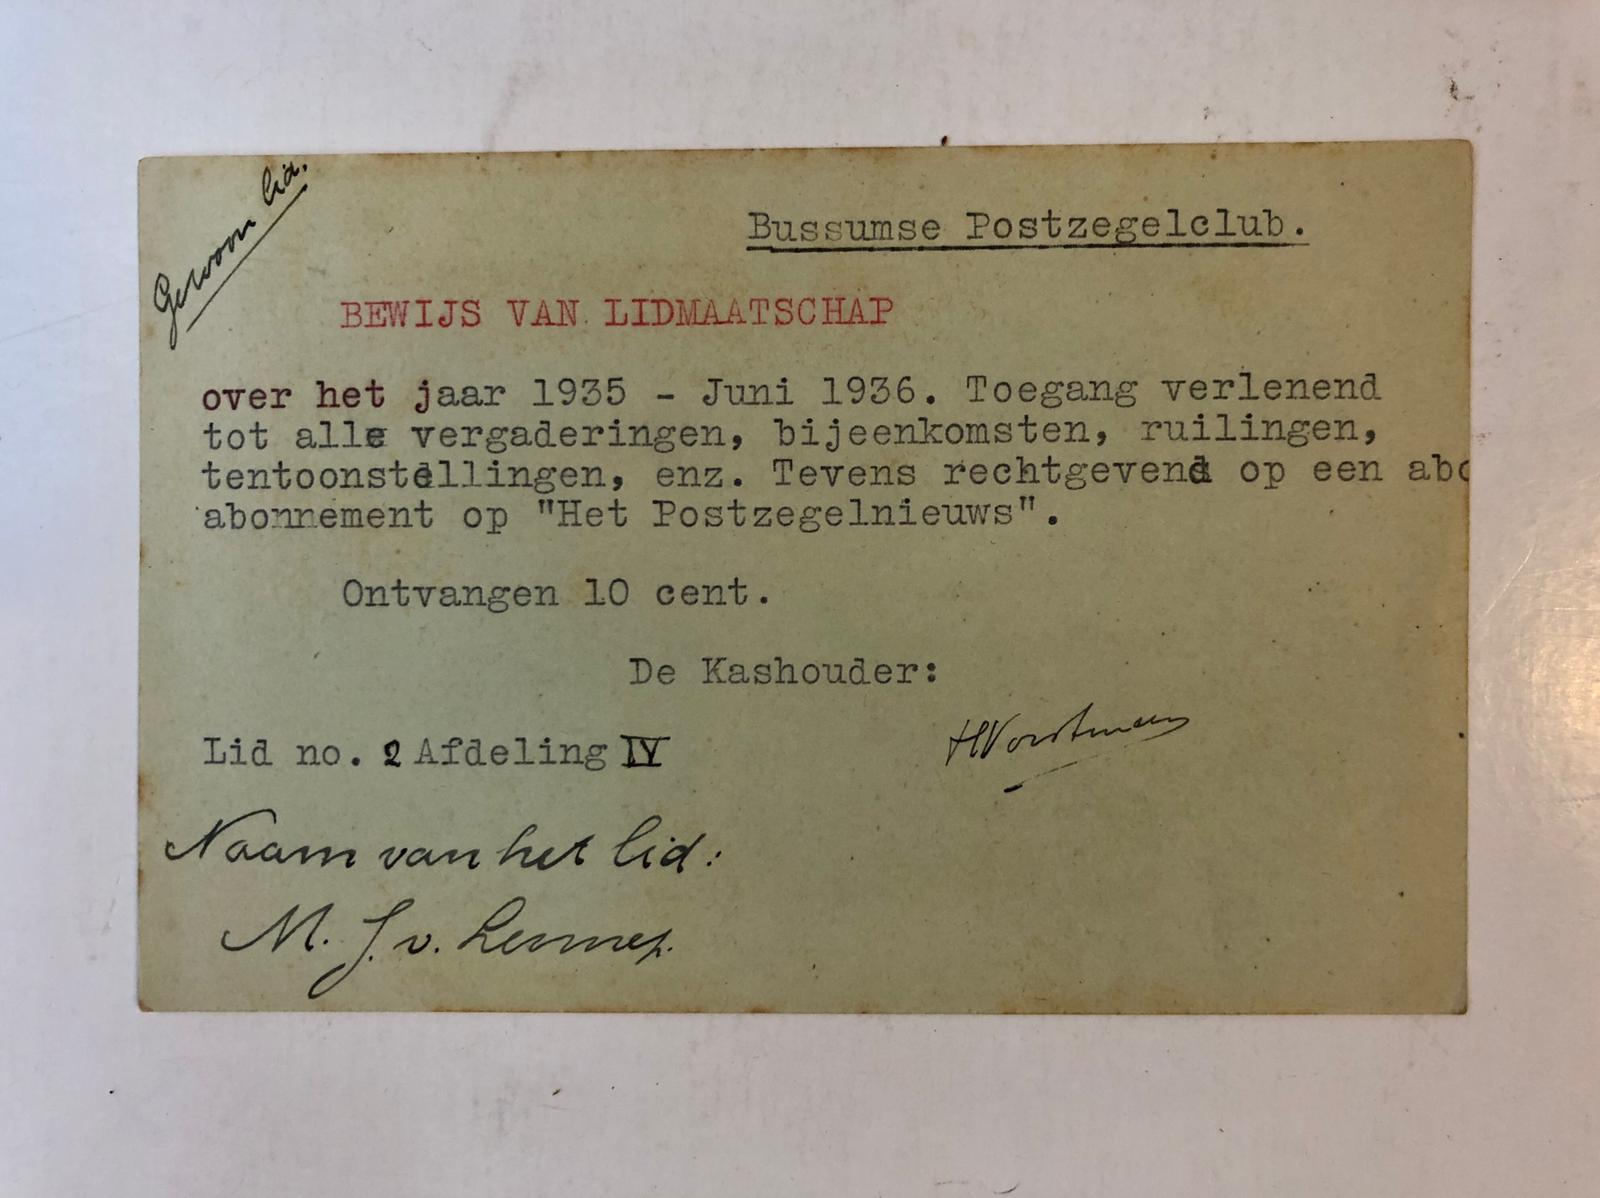  - BUSSUM, POSTZEGELCLUB Lidmaatschapkaart en uitnodigingskaart voor een vergadering van de Bussumse Postzegelclub, 1935, getekend H. Vorstman en A.J. Ult...